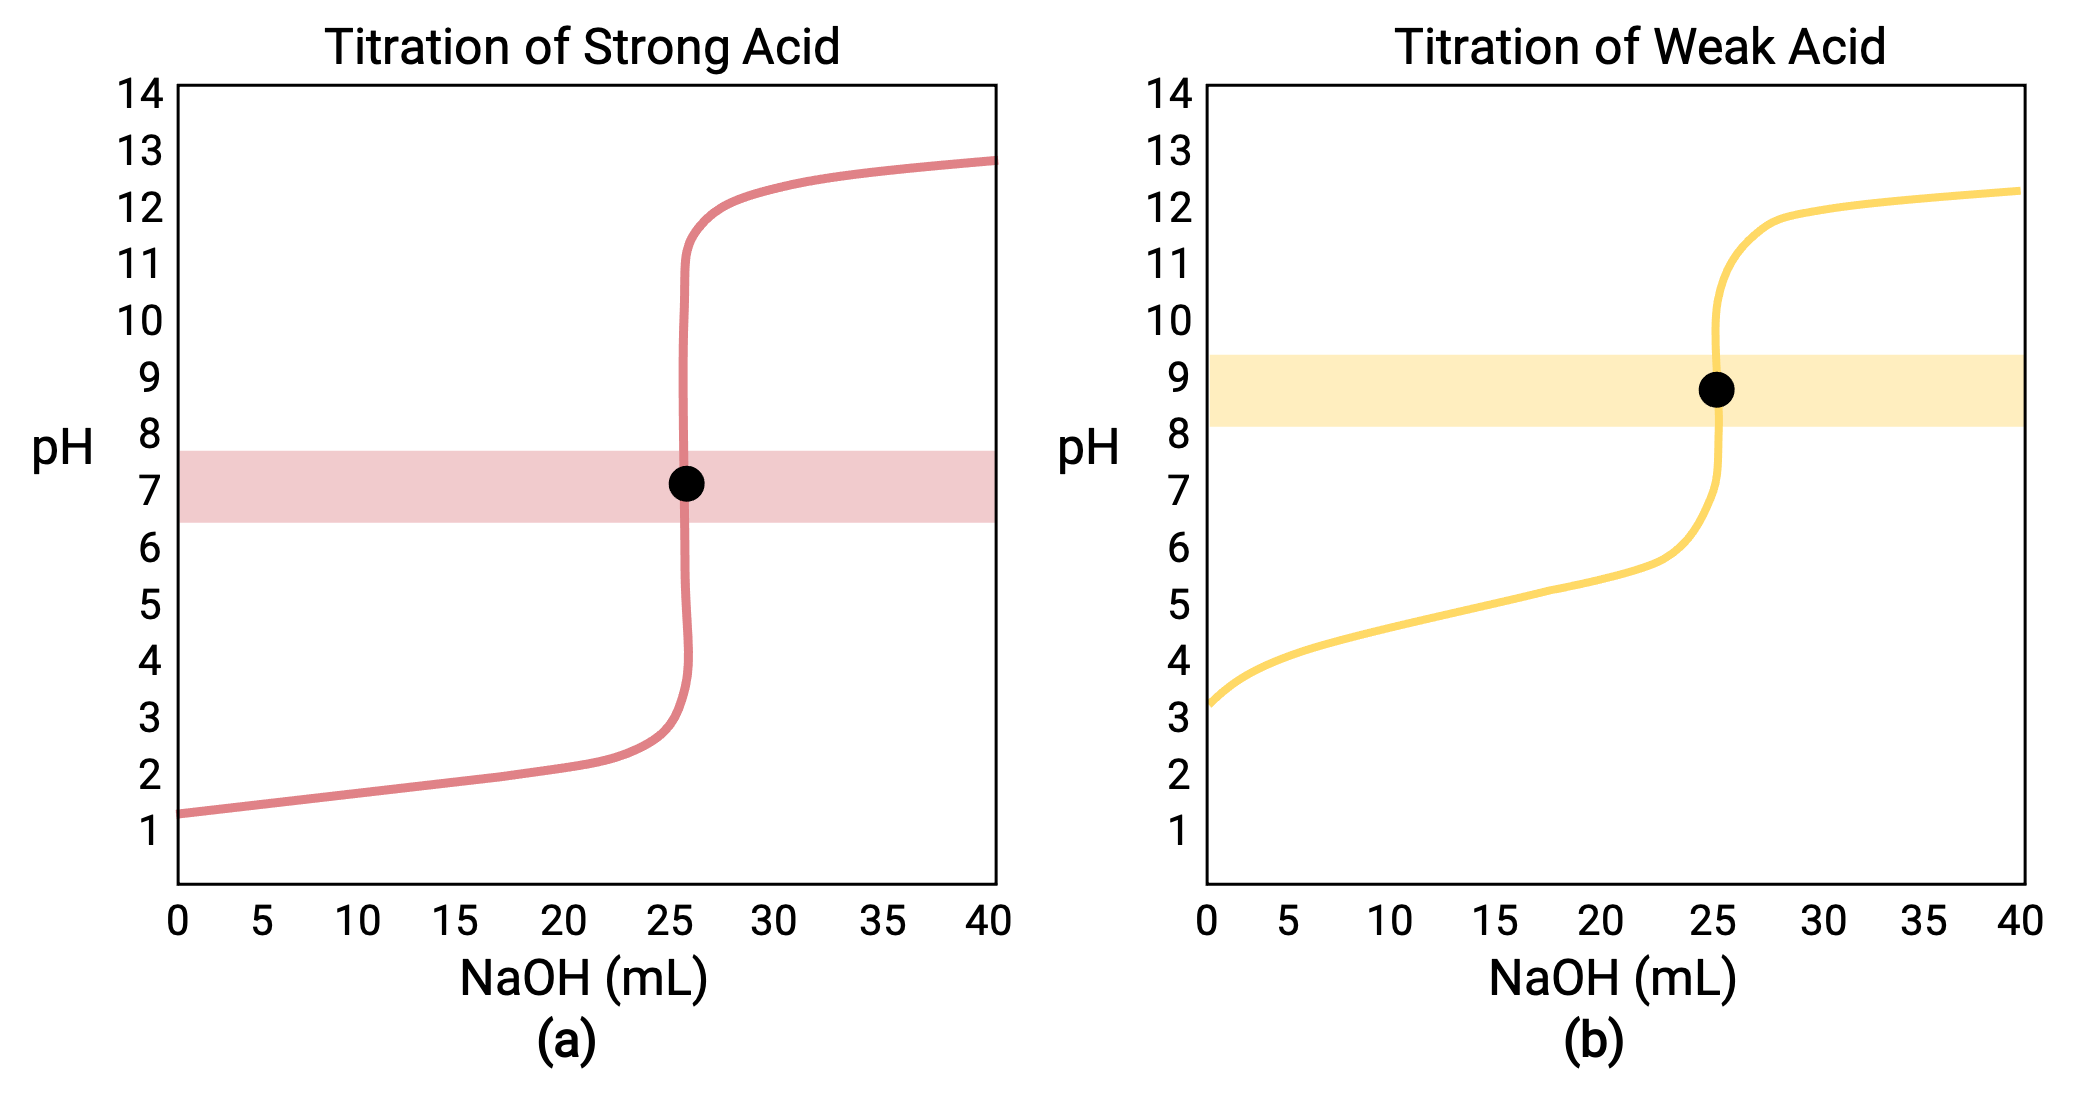 diagram of acid base titration